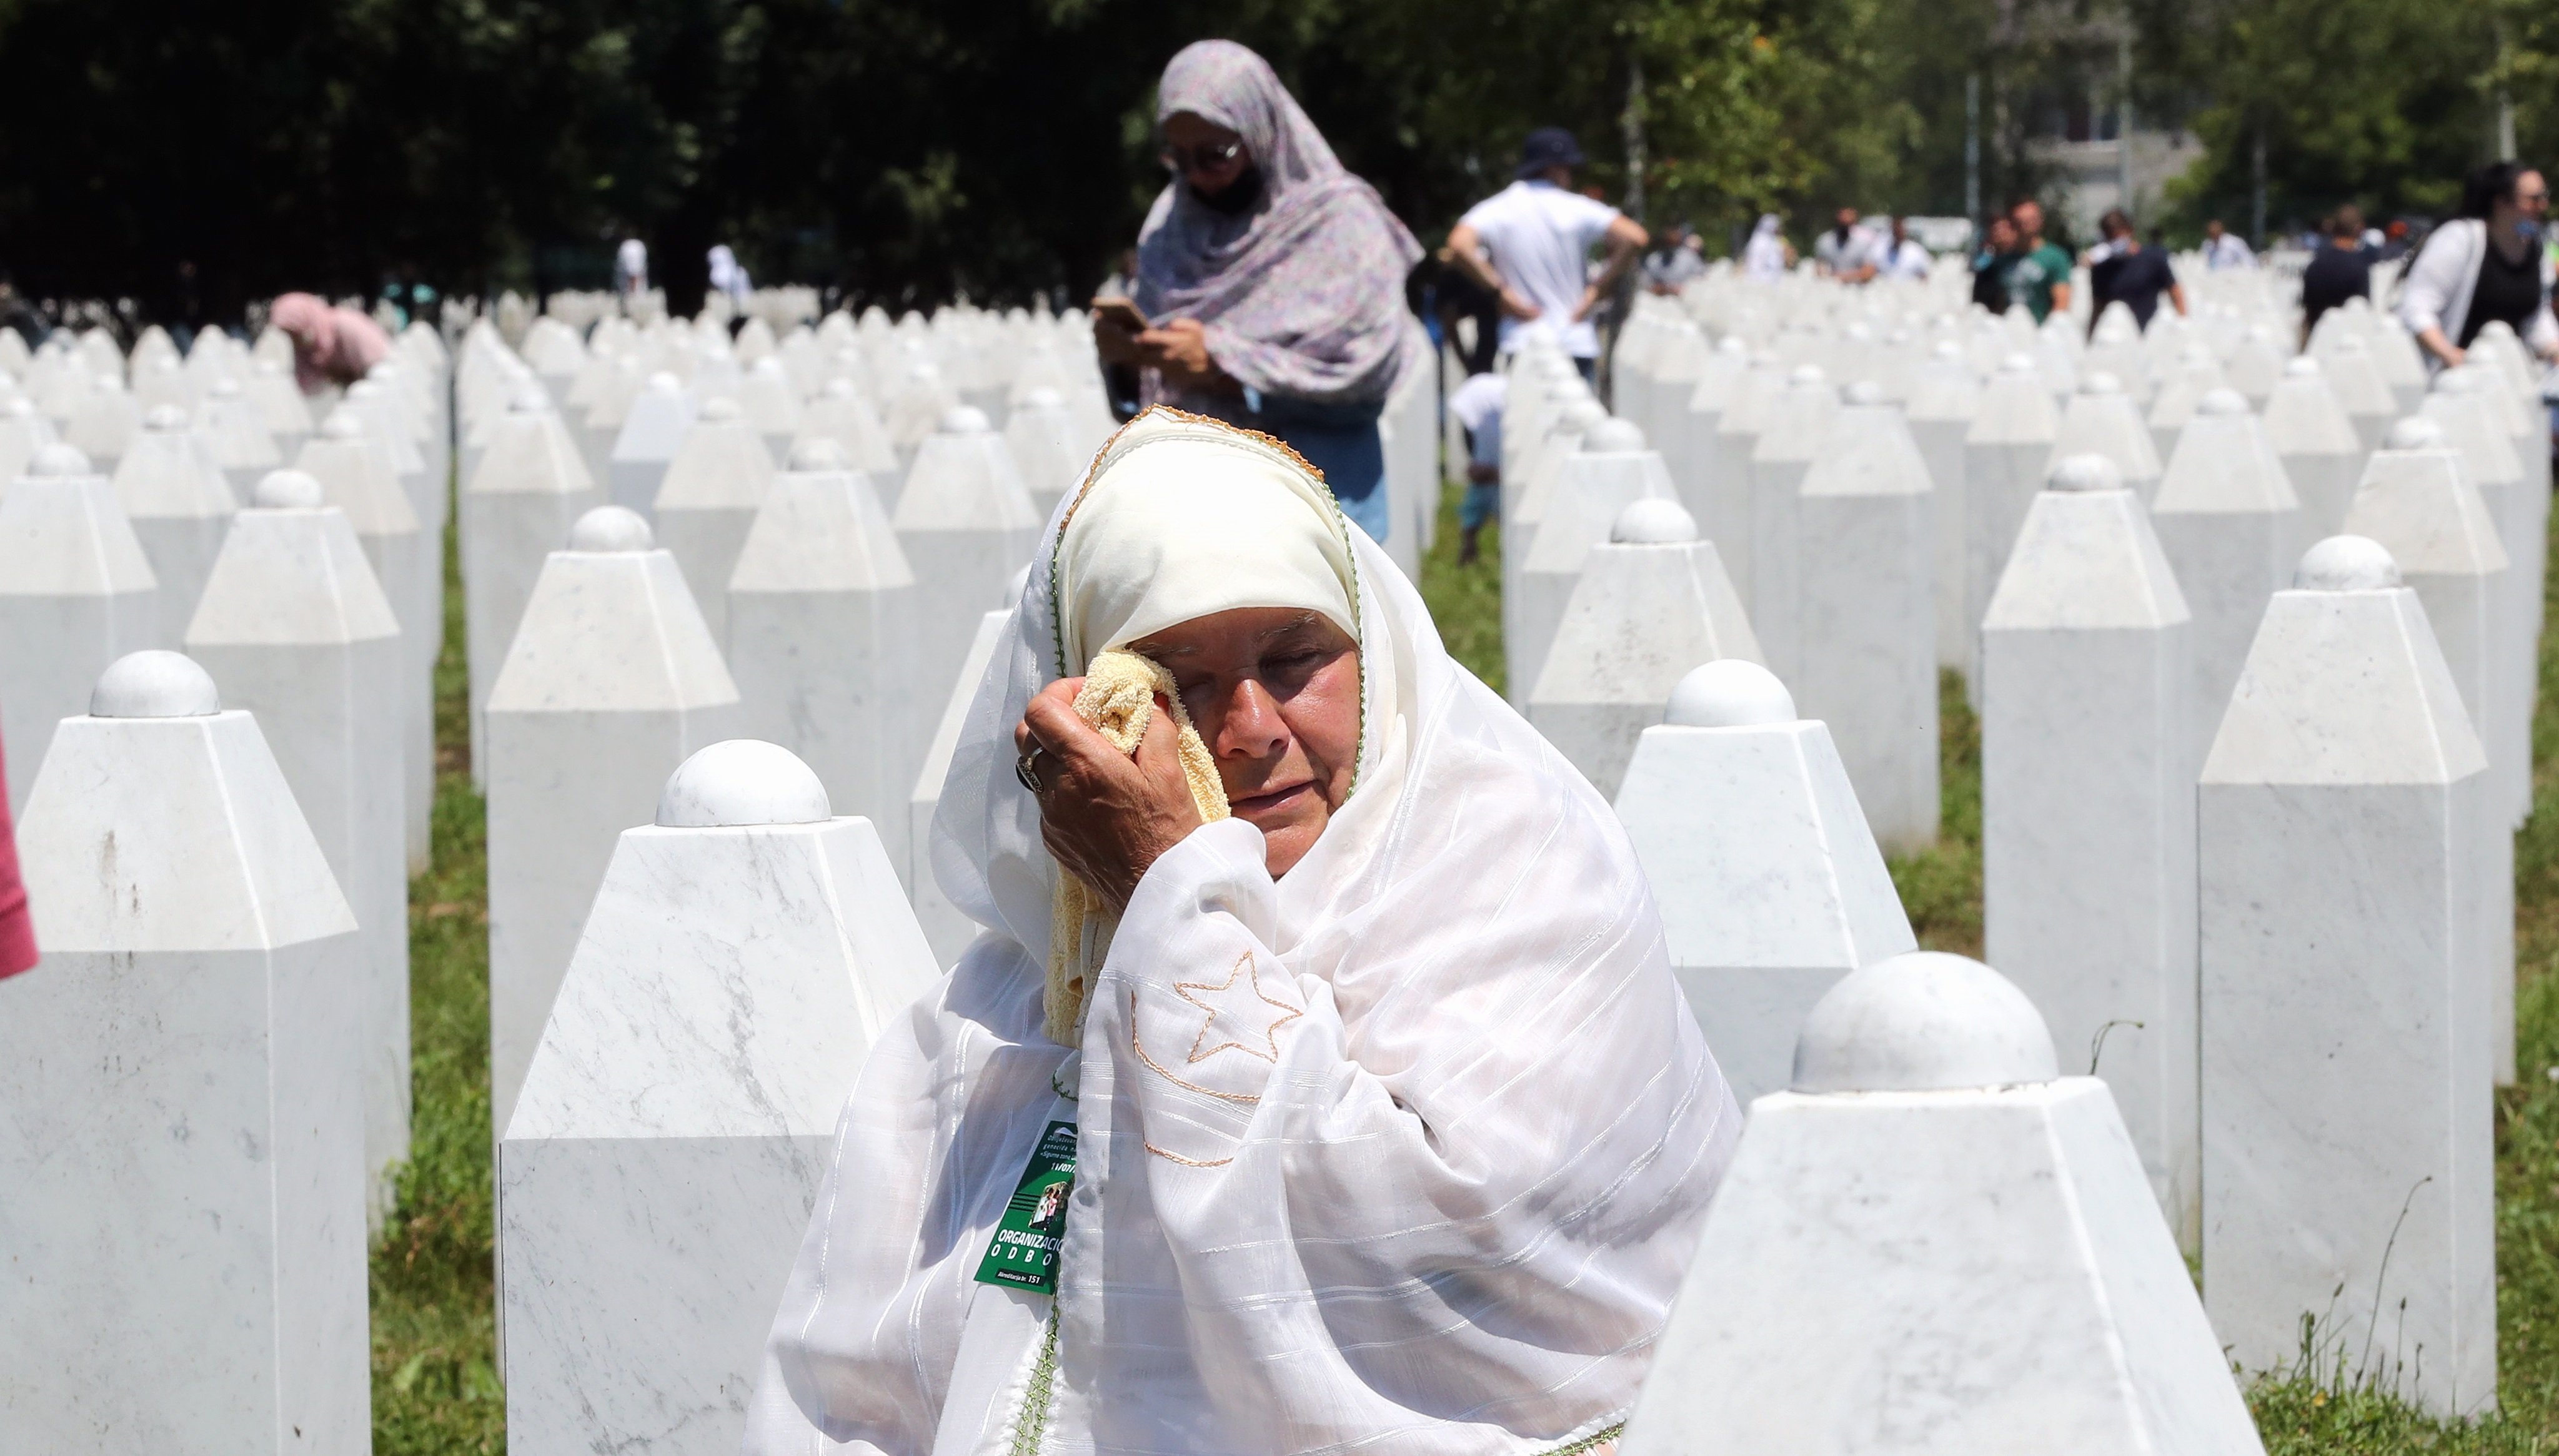 Homenatge a les víctimes del genocidi de Srebrenica 25 anys després